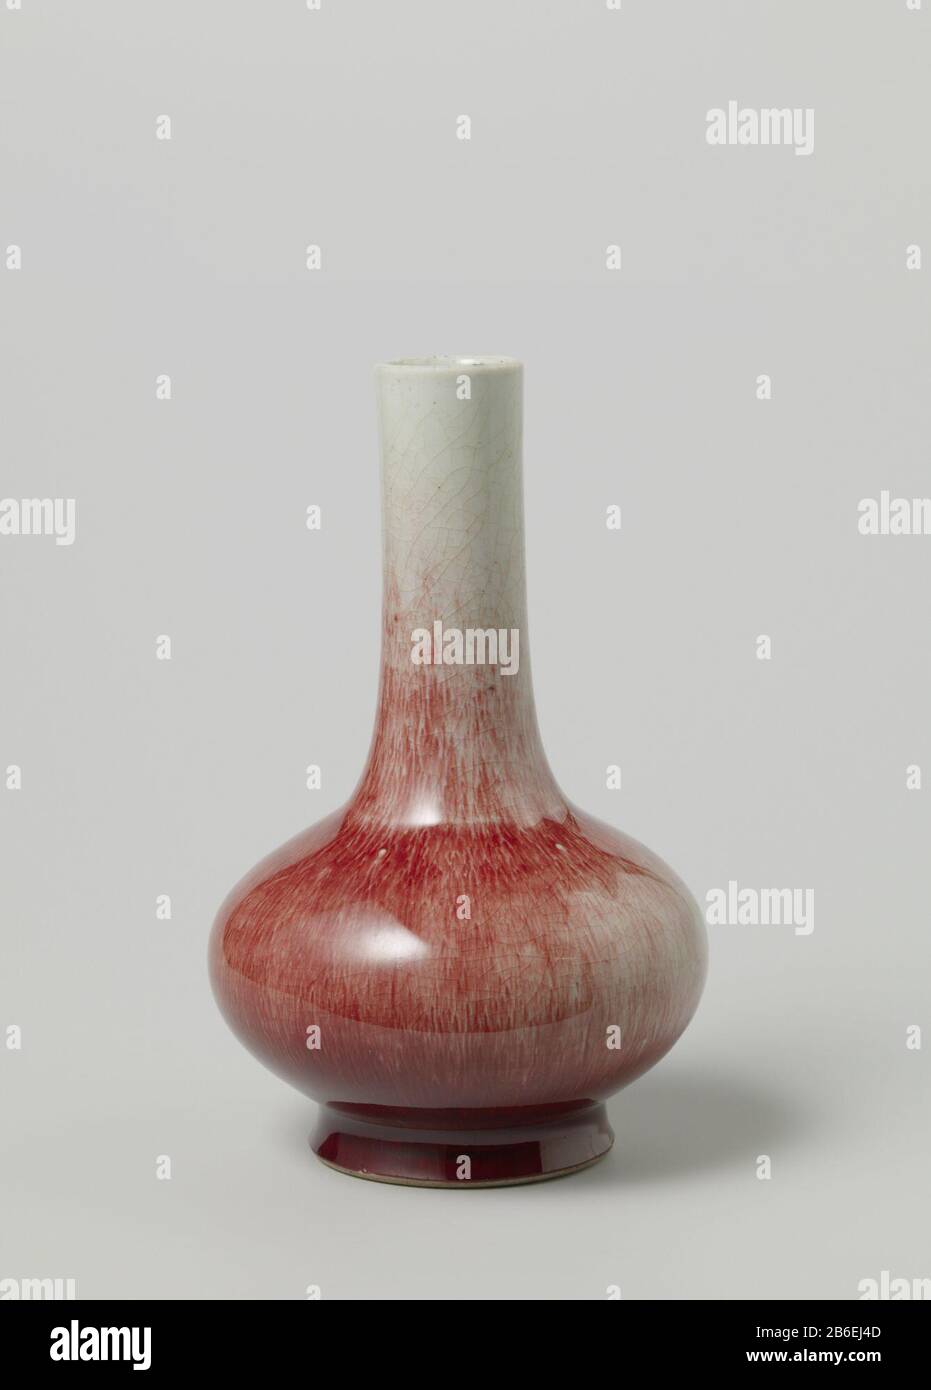 Globular vase covered with a red Flesvormige vaas van porselein met een platgedrukt bolvormig lichaam, bedekt met een rood glazuur. Binnen de voetrand wit geglazuurd. Monochromen. Manufacturer : pottenbakker: anoniemPlaats manufacture: China Dating: ca. 1800 - ca. 1899School / stijl: Qing-dynastie (1644-1912) Physical kenmerken: porselein met een monochroom glazuur Material: porselein glazuur Techniek: draaiend bewerken / bakken / glazuren Dimensions: h 12,5 cmrand: d 4,2 cmbuik: d 14,5 cmvoet: d 8,5 cm Stock Photo